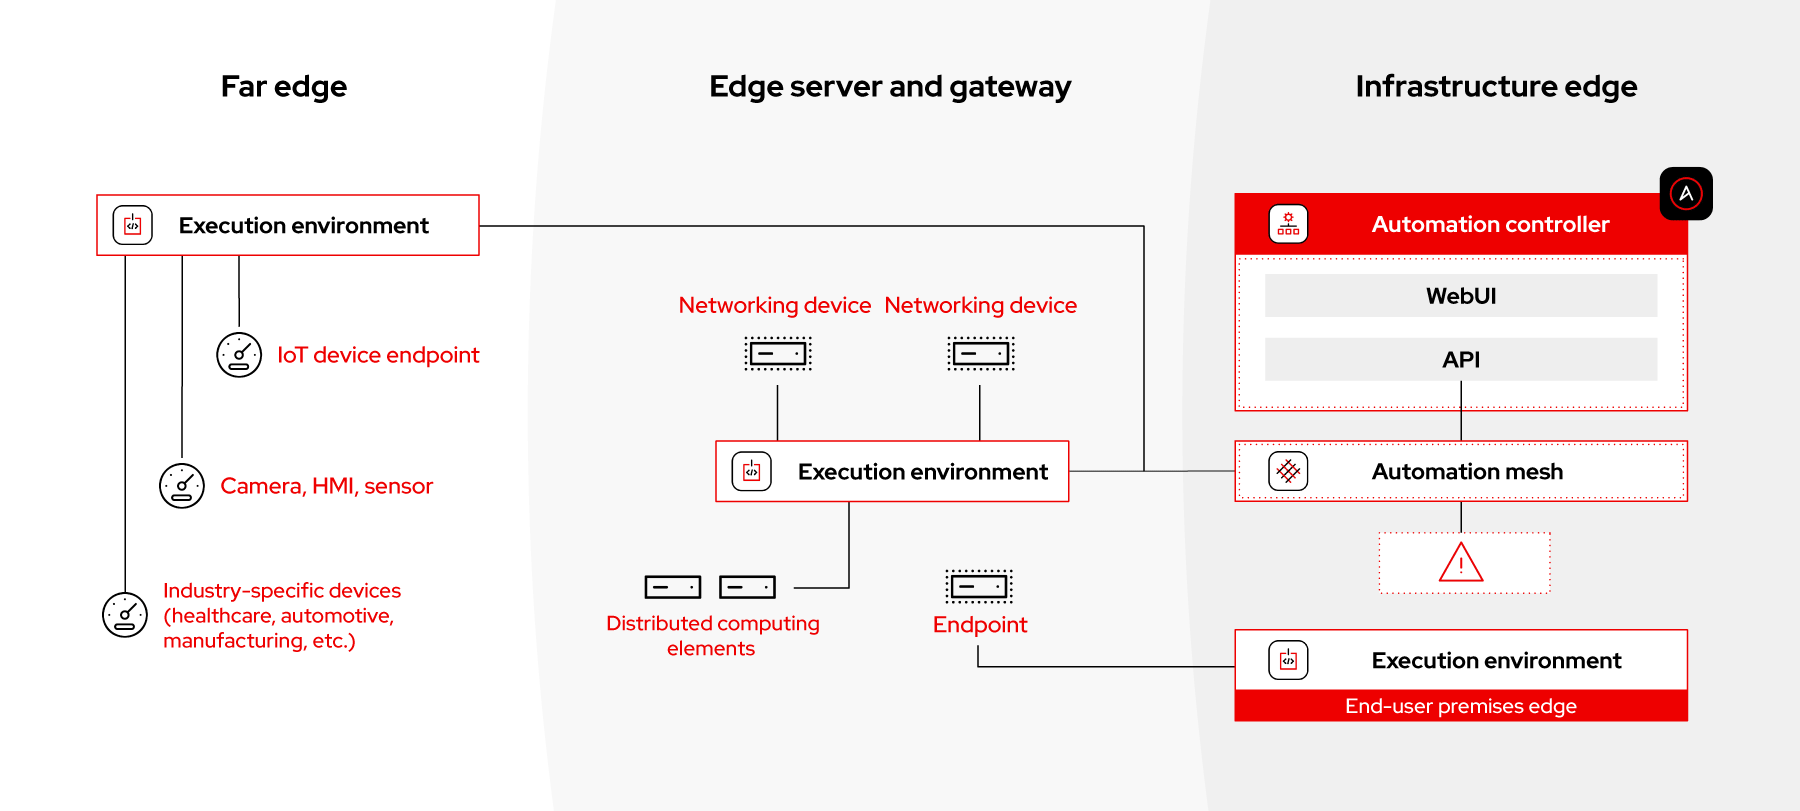 Edge-use-case-image